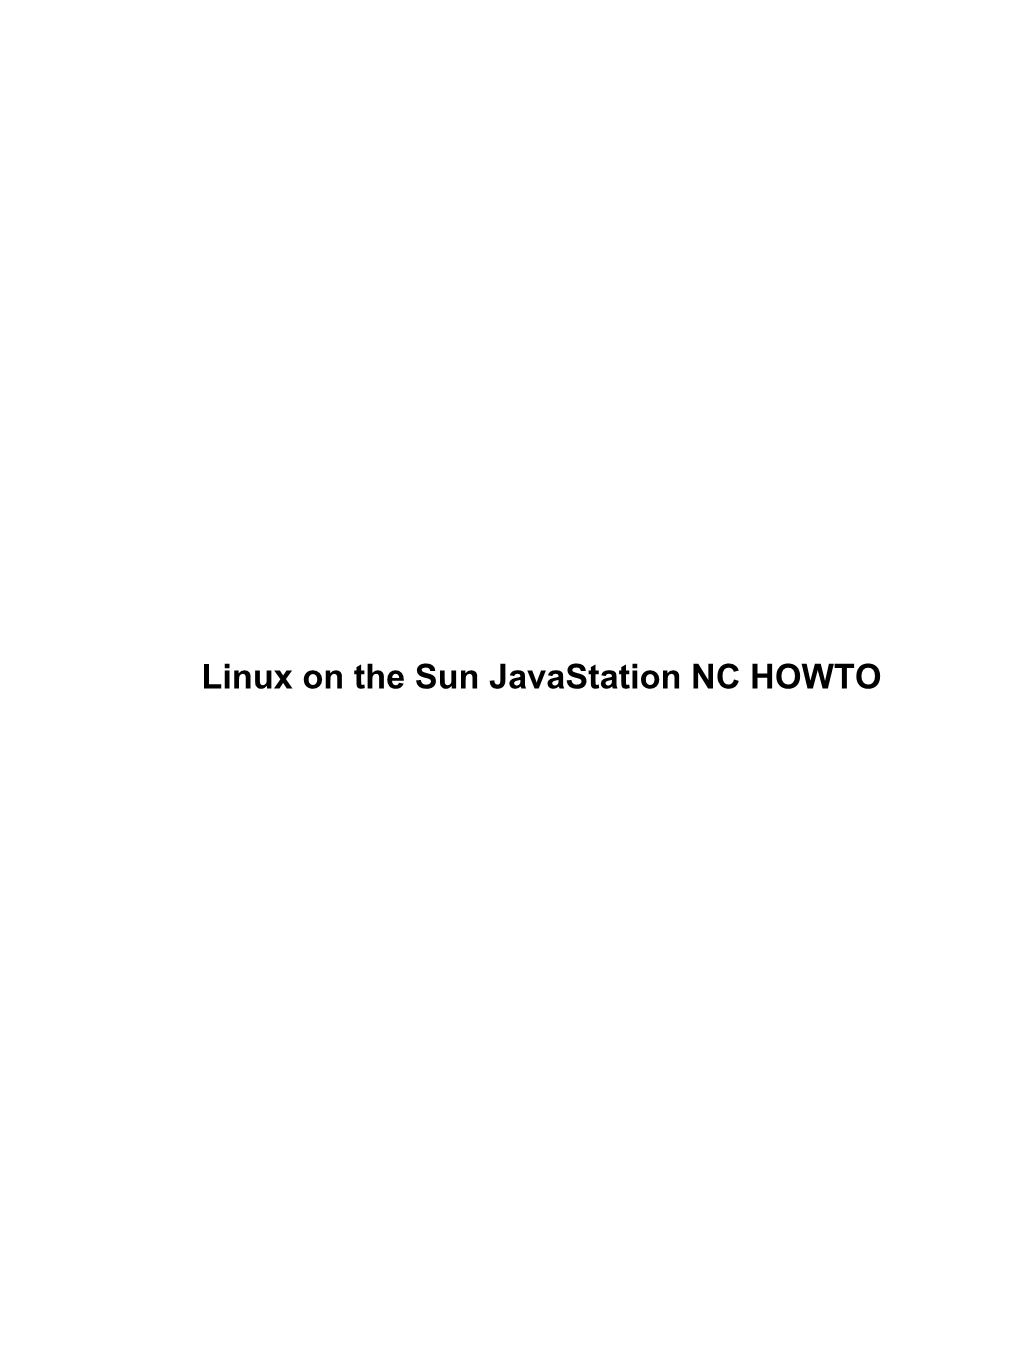 Javastation-HOWTO